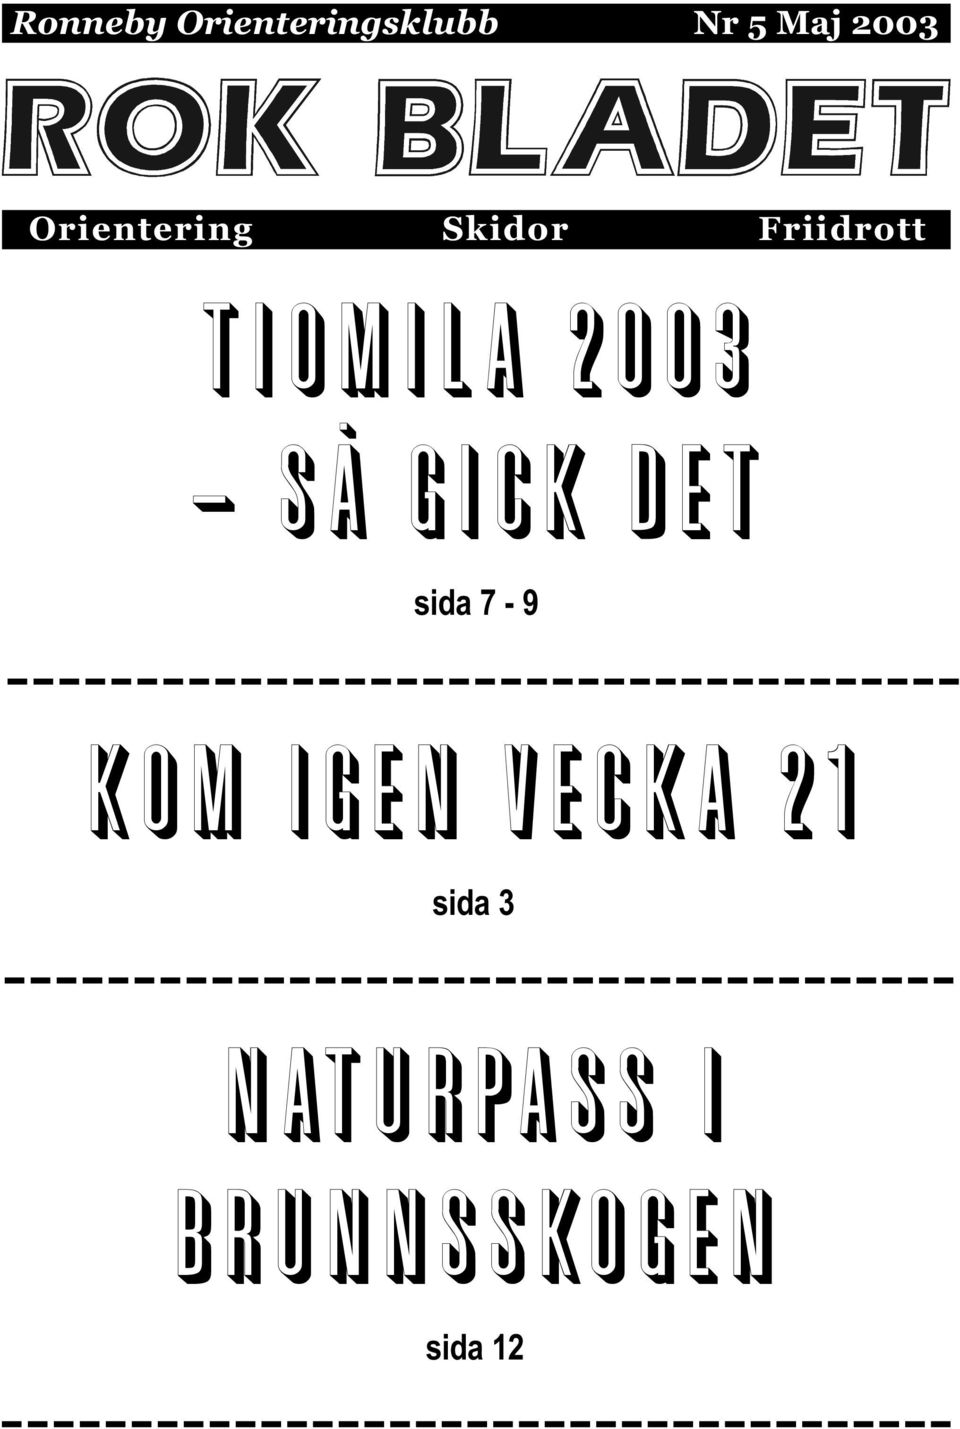 2003 - SÅ GICK DET sida 7-9 kom igen